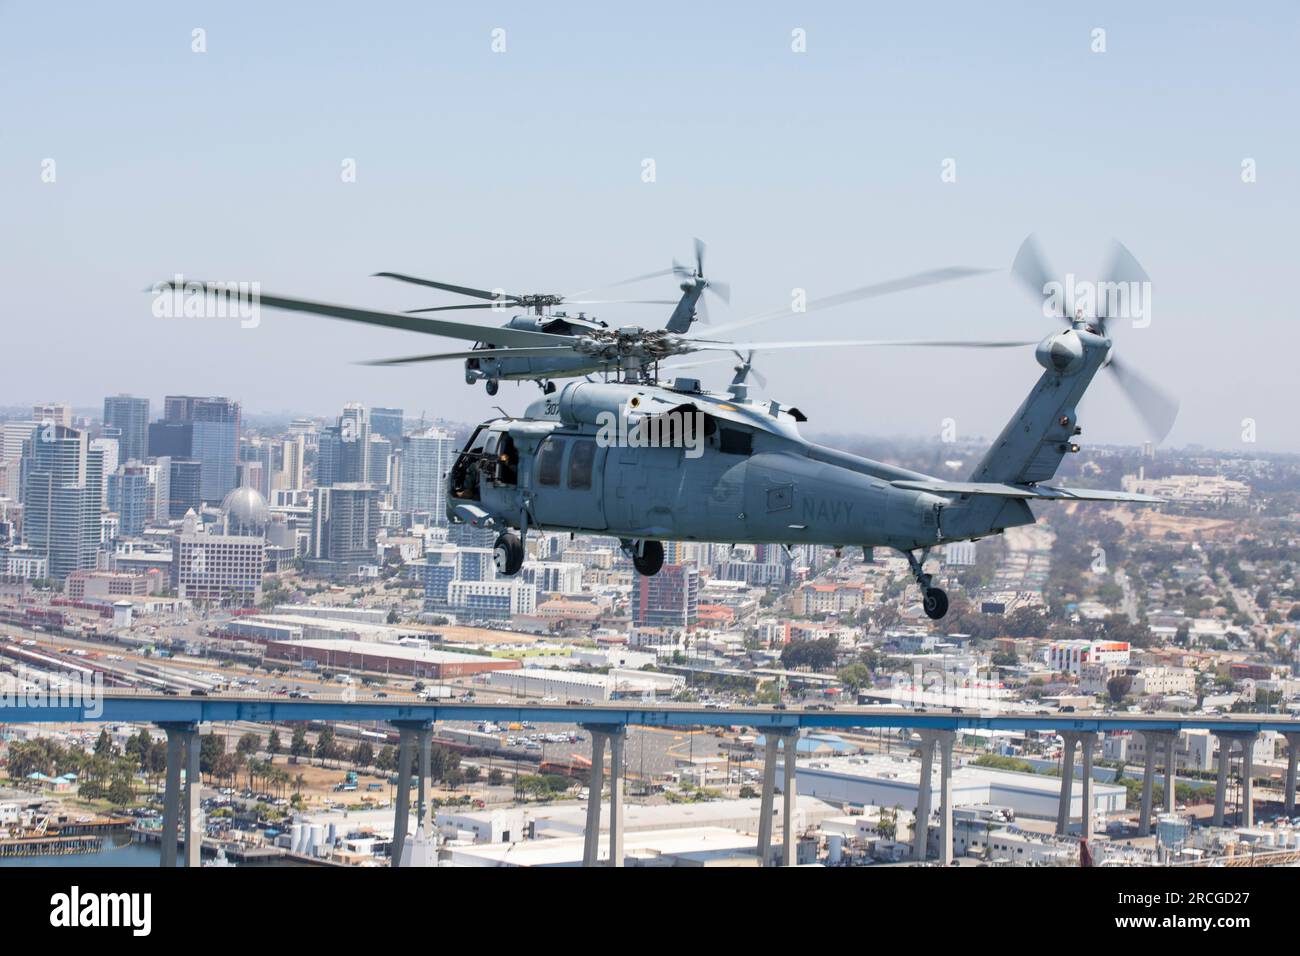 SAN DIEGO, Kalifornien (30. Juni 2023) MH-60s Seahawks, die den ‚Firehawks‘ des Helicopter Sea Combat Squadron (HSC) 85 zugeteilt wurden, fliegen während des letzten Flugs des Geschwaders vor seiner Deaktivierungszeremonie über San Diego. Das Marine Reserve-Geschwader HSC-85 ist das letzte Hubschraubergeschwader der Marine, das sich mit der Spezialkriegsführung der Marine (NSW) und der Suche und Rettung im Kampf (CSAR) befasst. (USA Marinebild von Mass Communication Specialist 2. Klasse Ryan LeCompte) Stockfoto